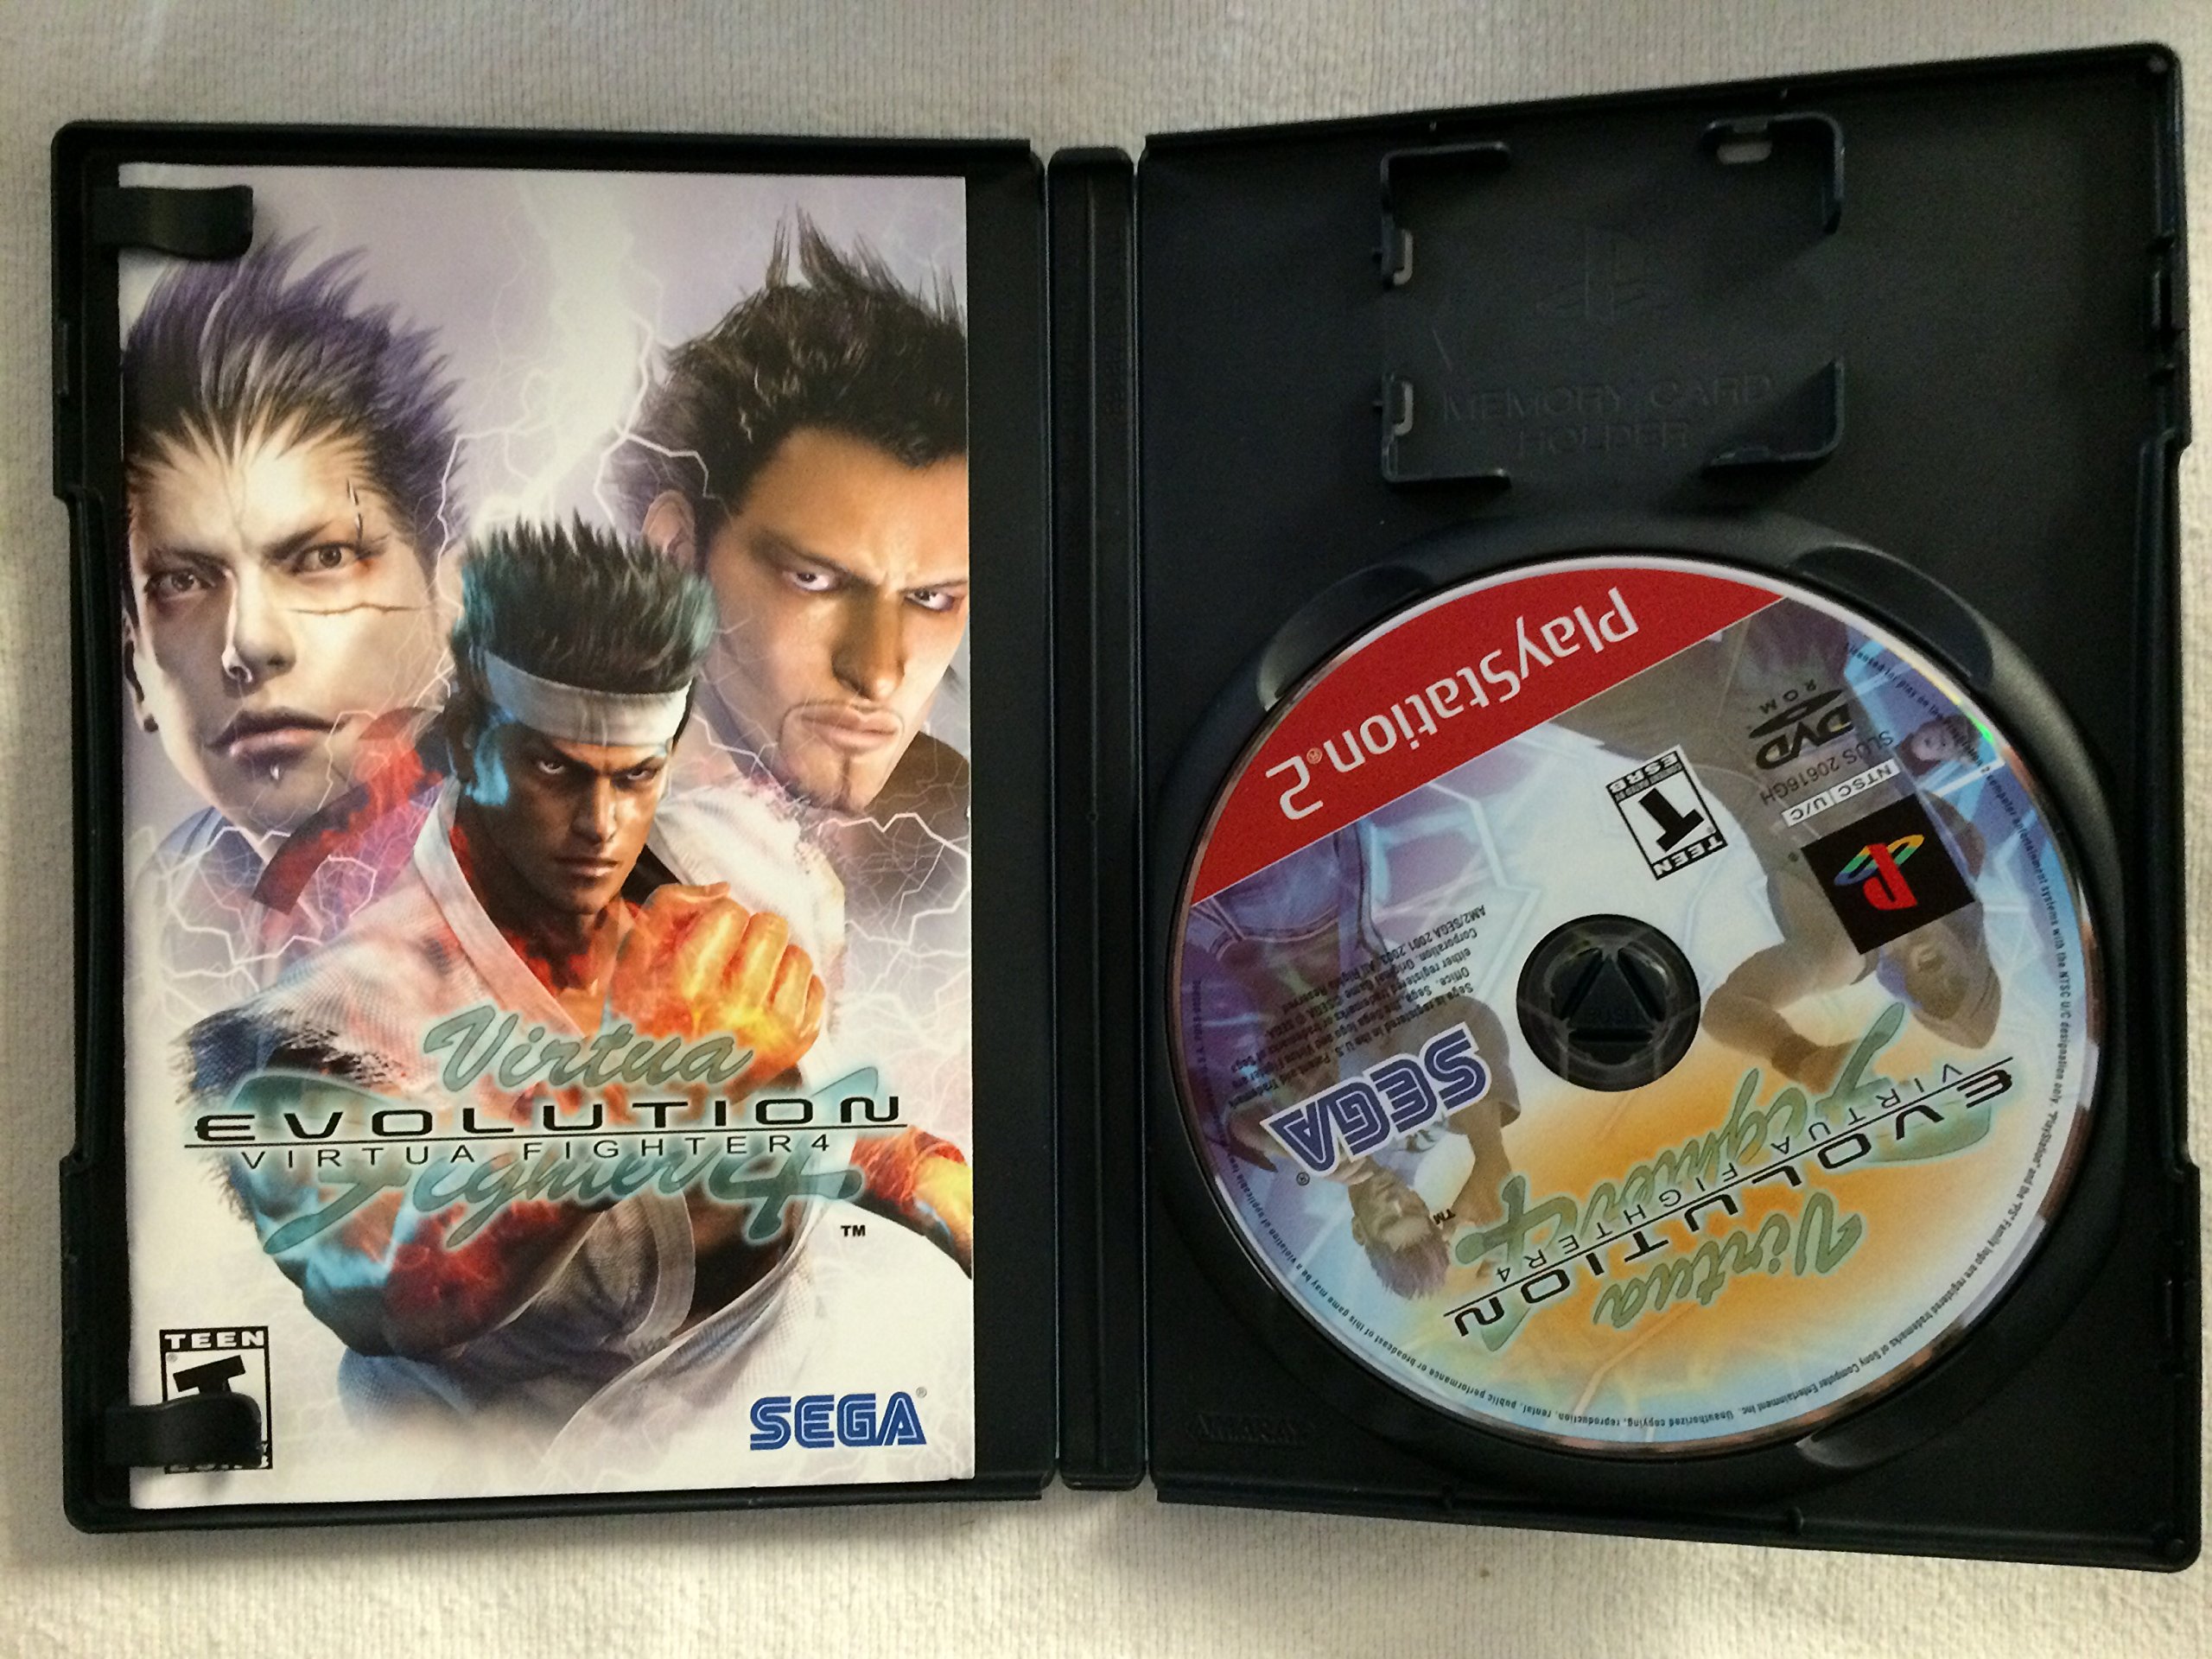 Virtua Fighter 4 Evolution - PlayStation 2